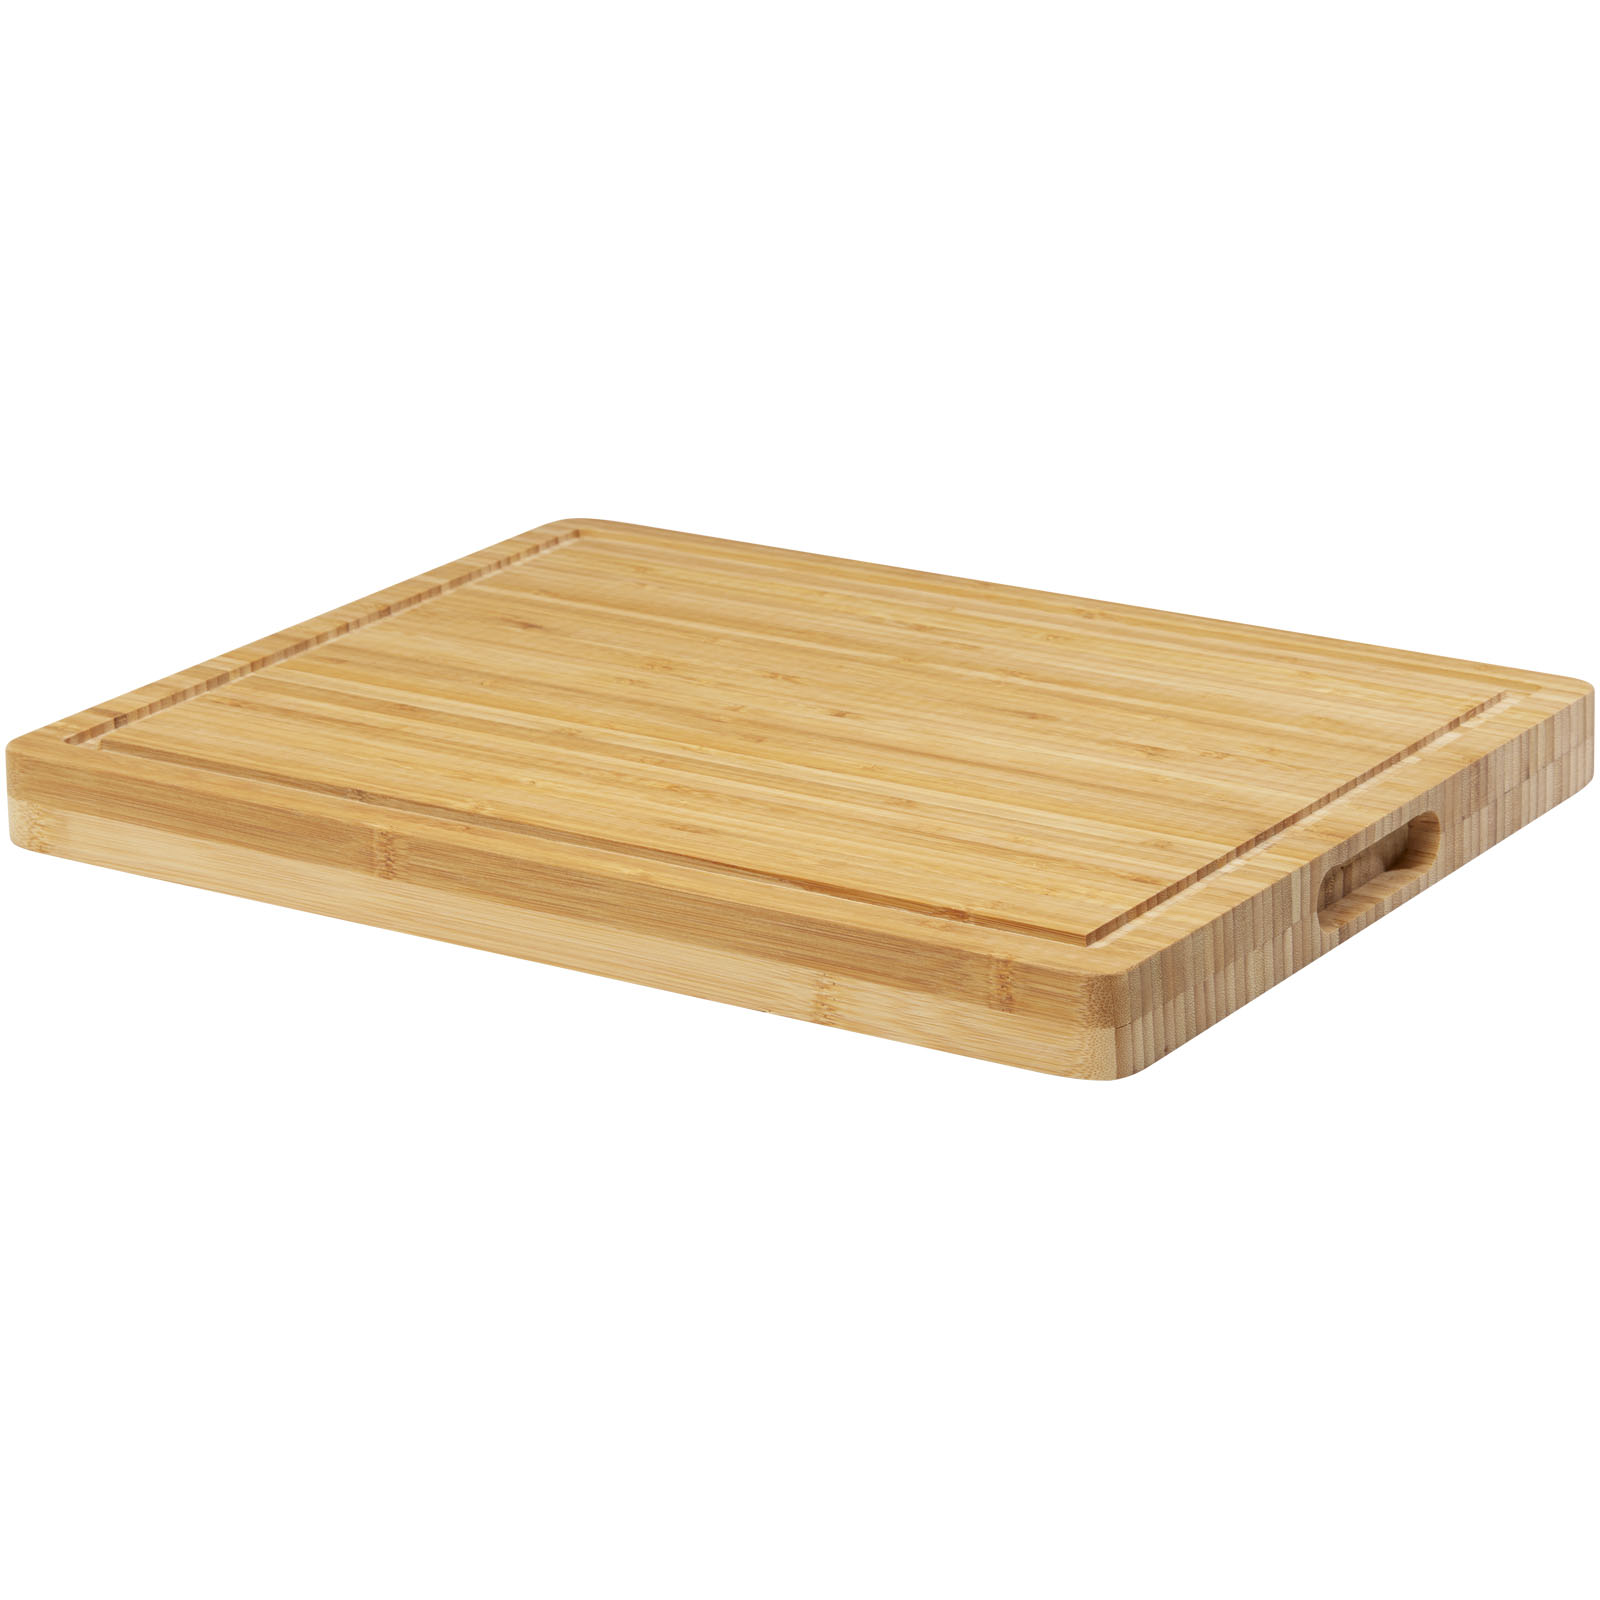 Bamboo cutting board KRONA - natural